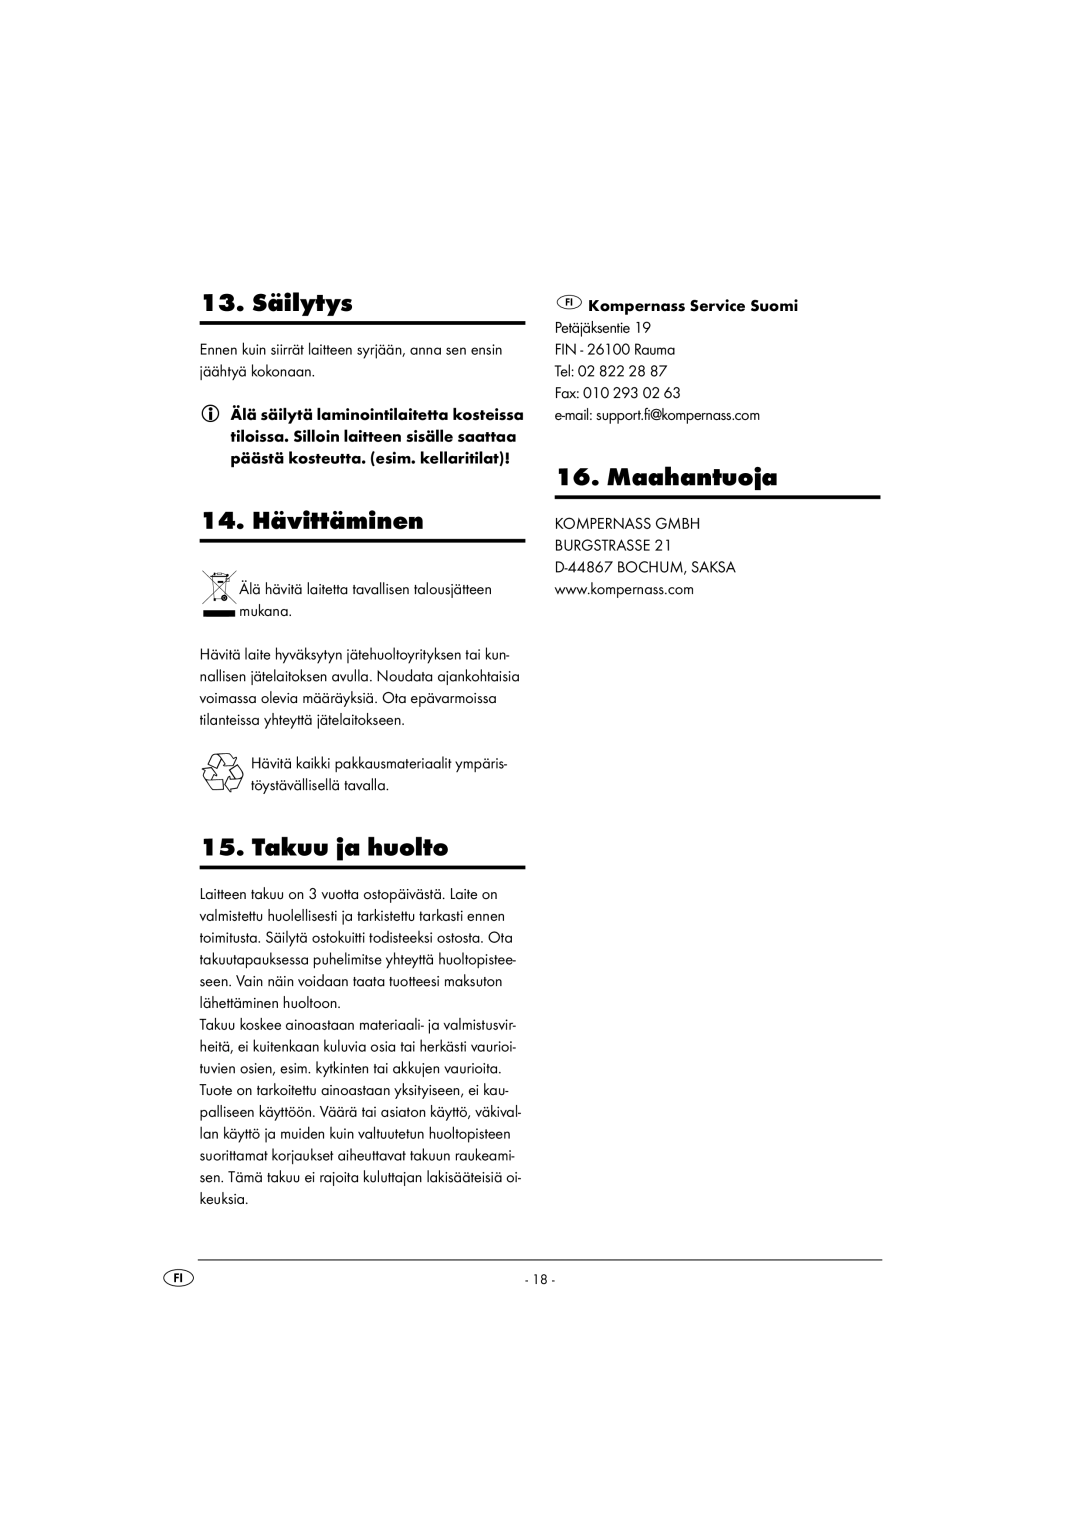 Kompernass KH 4412 manual 13. Säilytys, 14. Hävittäminen, Takuu ja huolto, Maahantuoja 